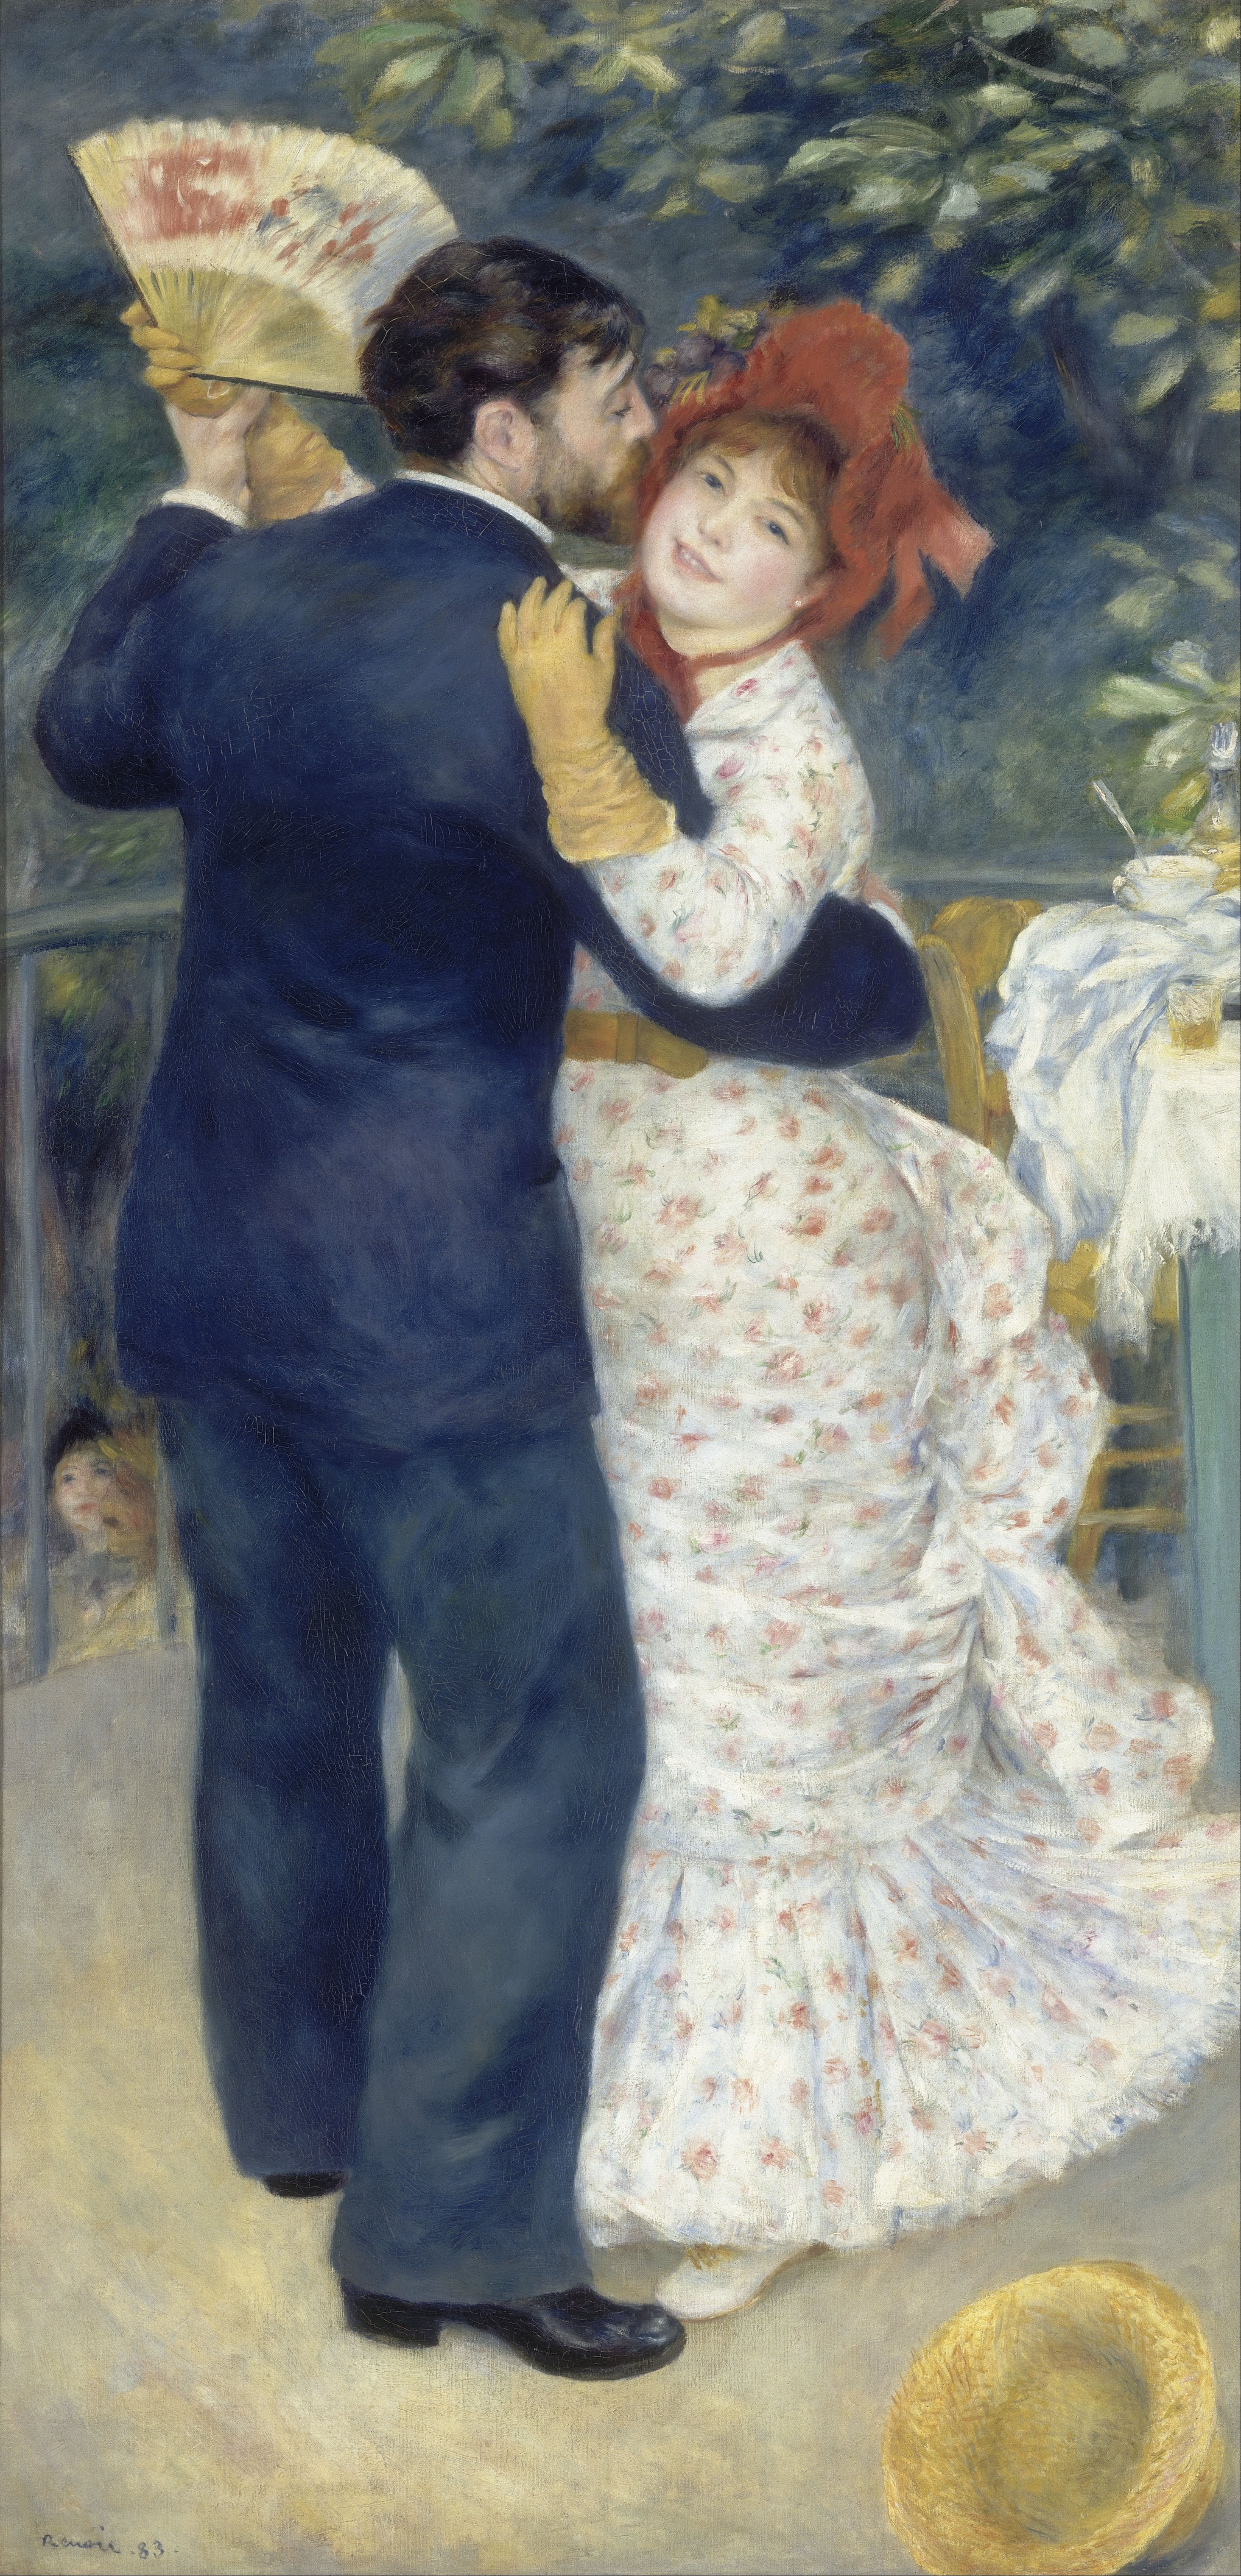 Pierre-Auguste Renoir, Danse à la campagne (1883). Courtesy of Musée d'Orsay.